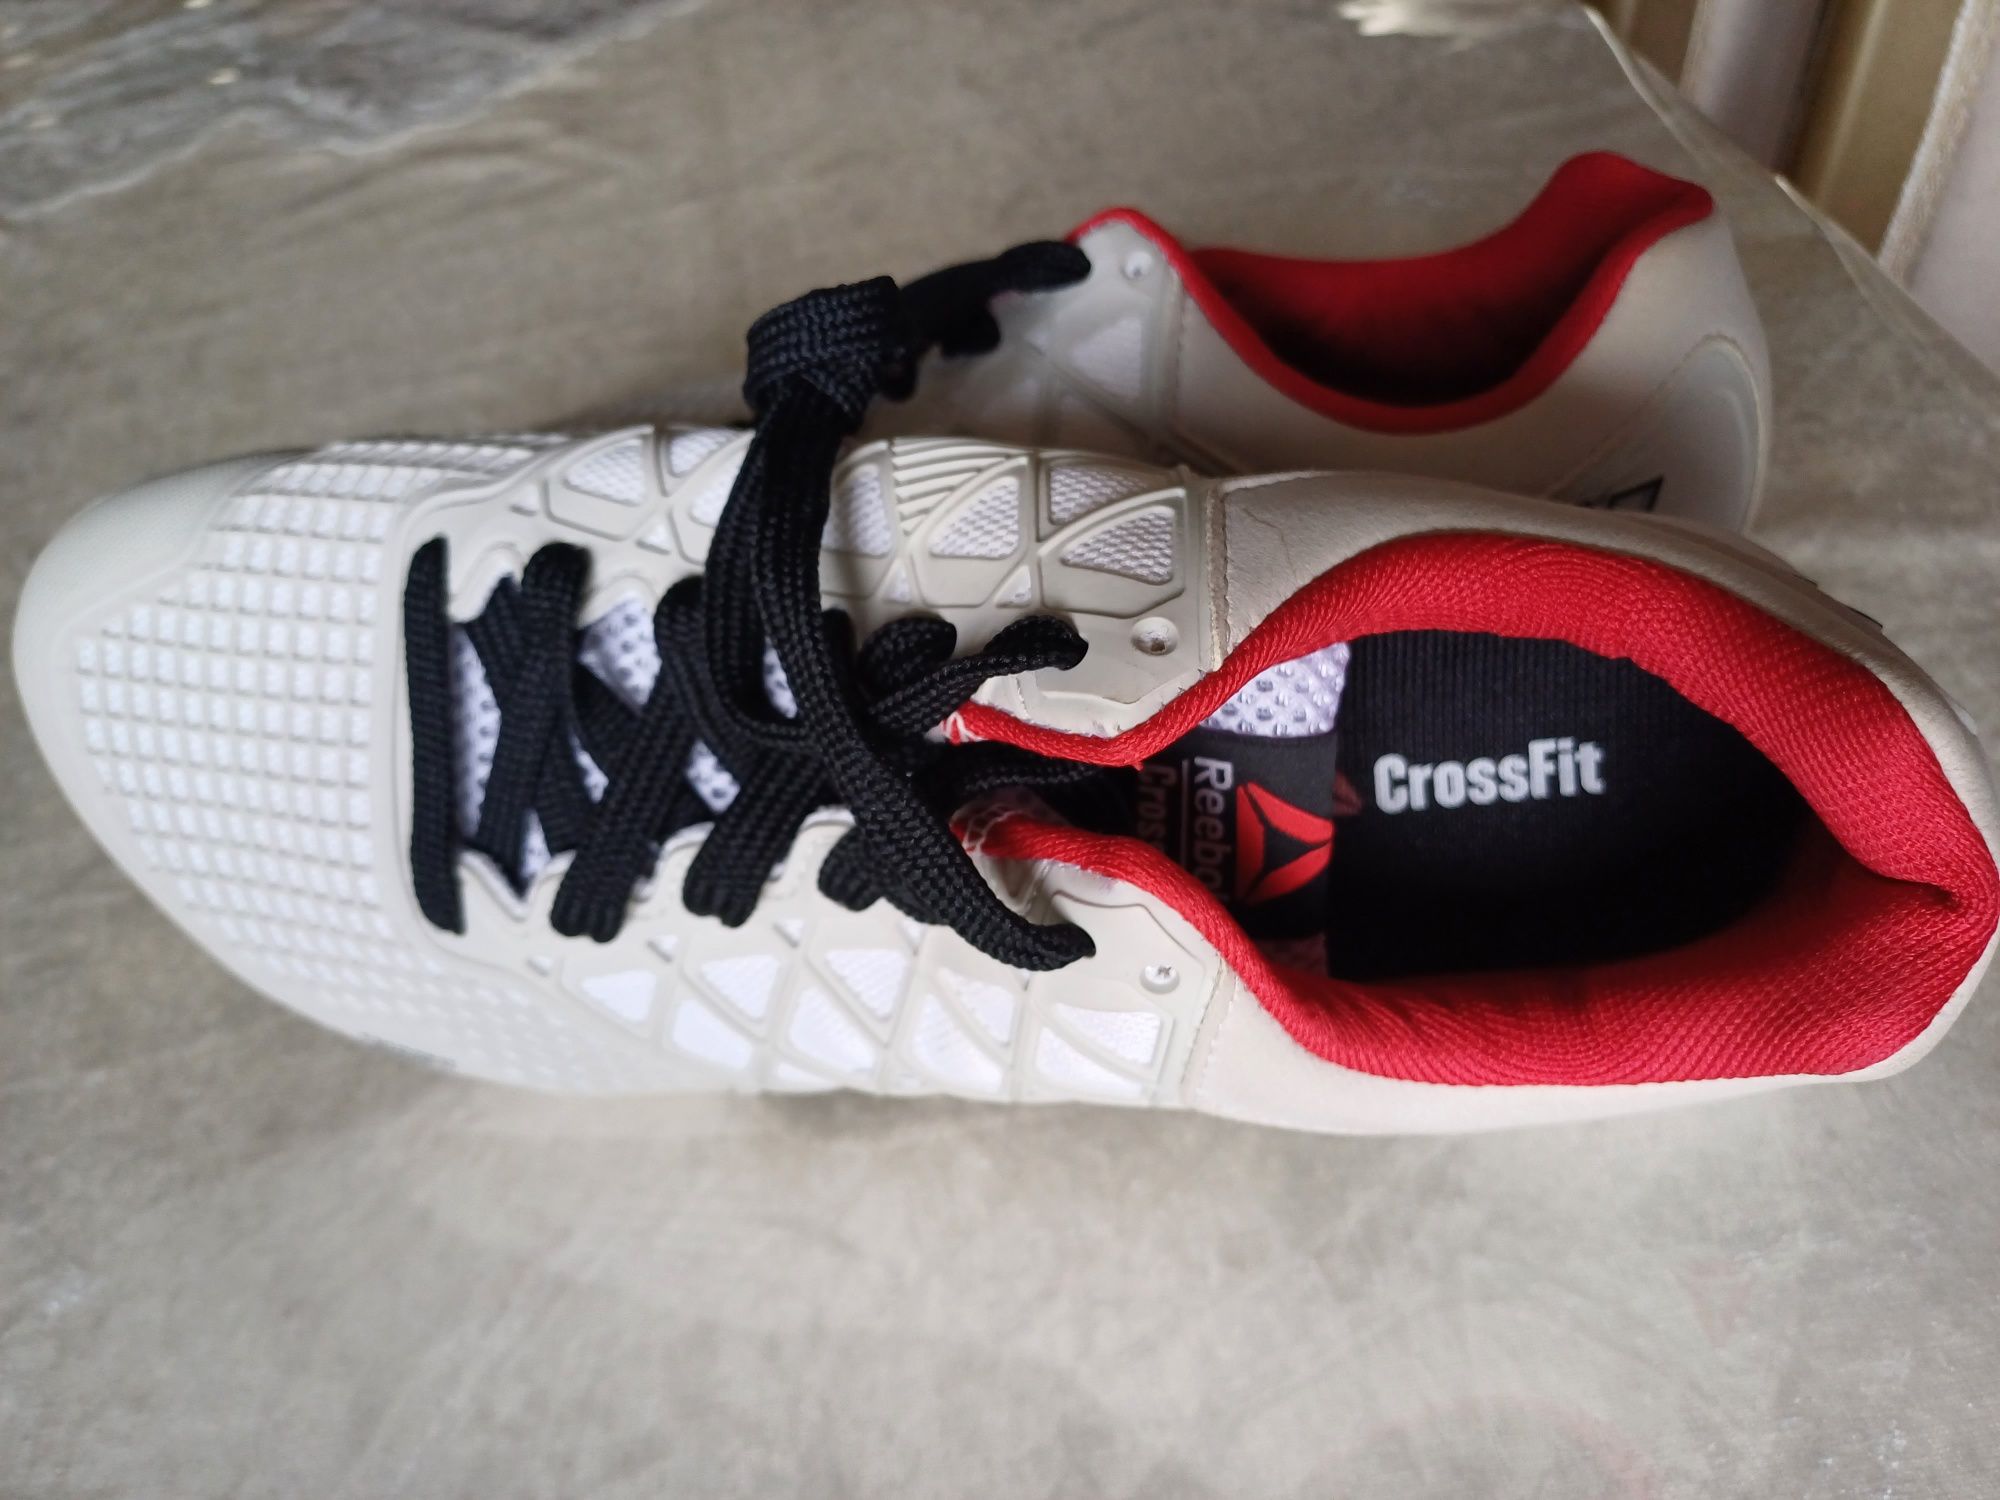 Продаются новые кроссовки Reebok Crossfit. Размер 42. Белого цвета.